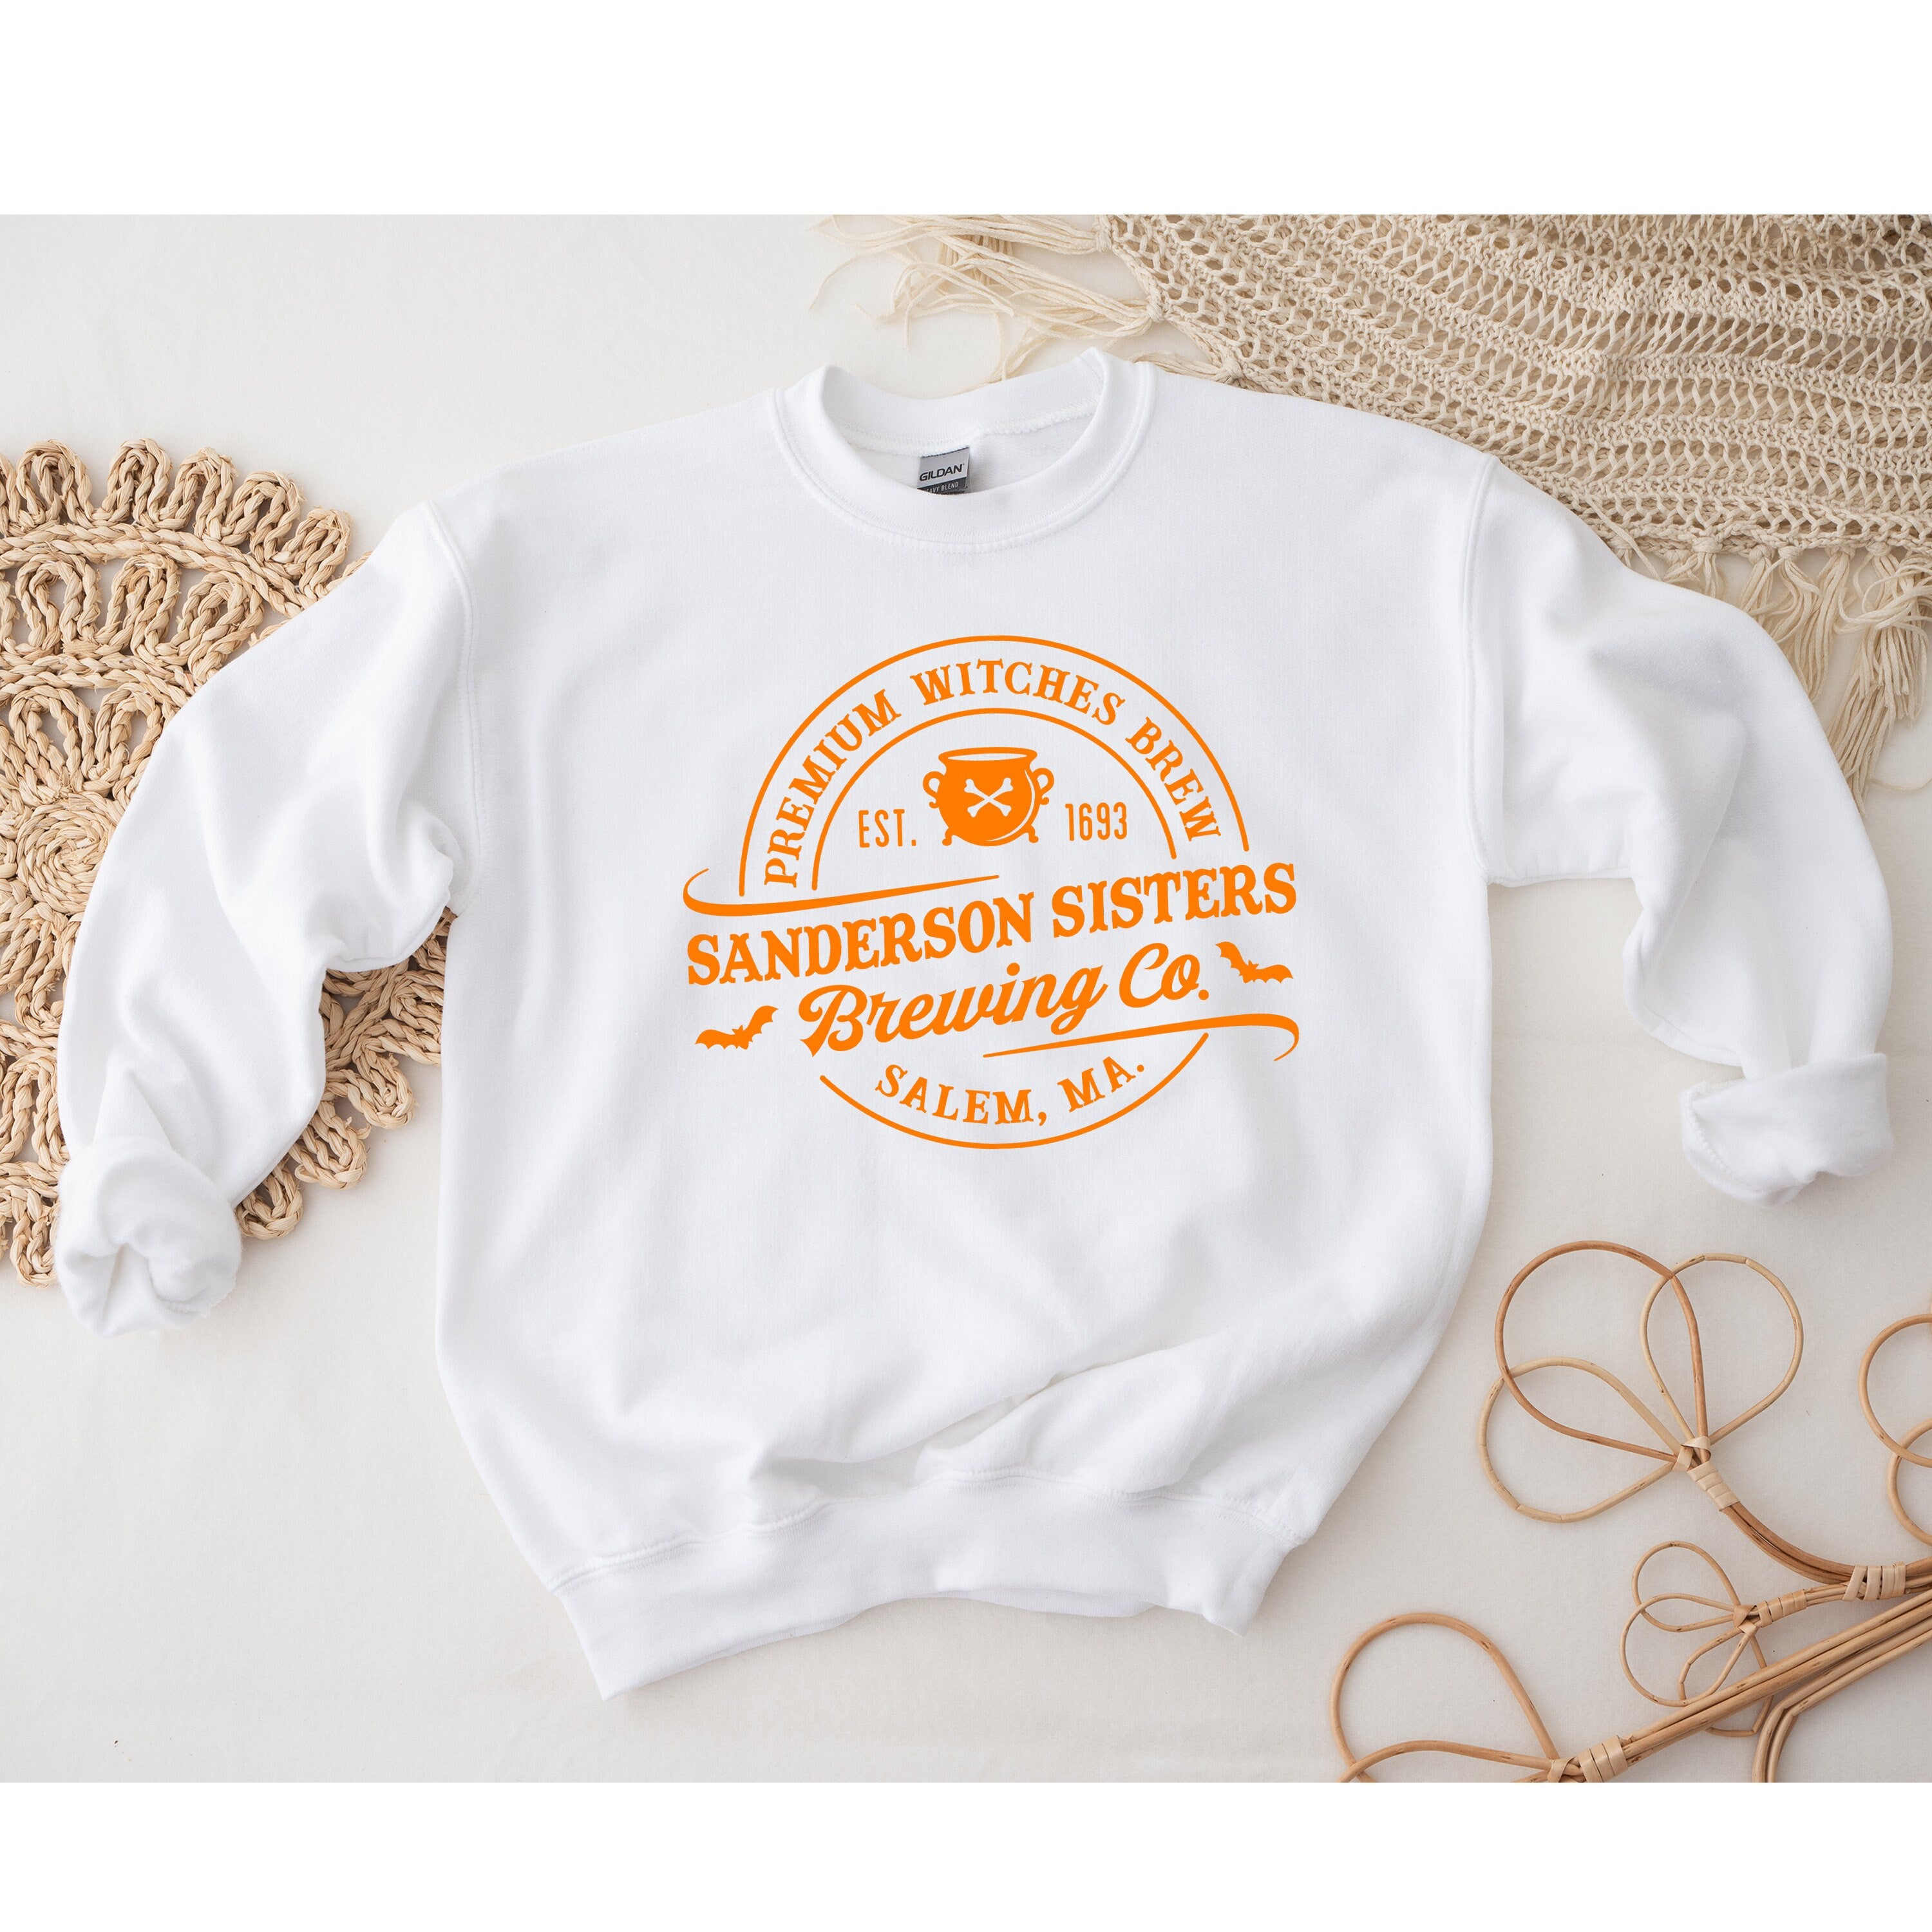 Sanderson Sisters Sweatshirt, Sanderson Sister Brewing Co Sweatshirt, Sanderson Sister Shirt, Halloween Shirts, Sanderson Sweatshirt